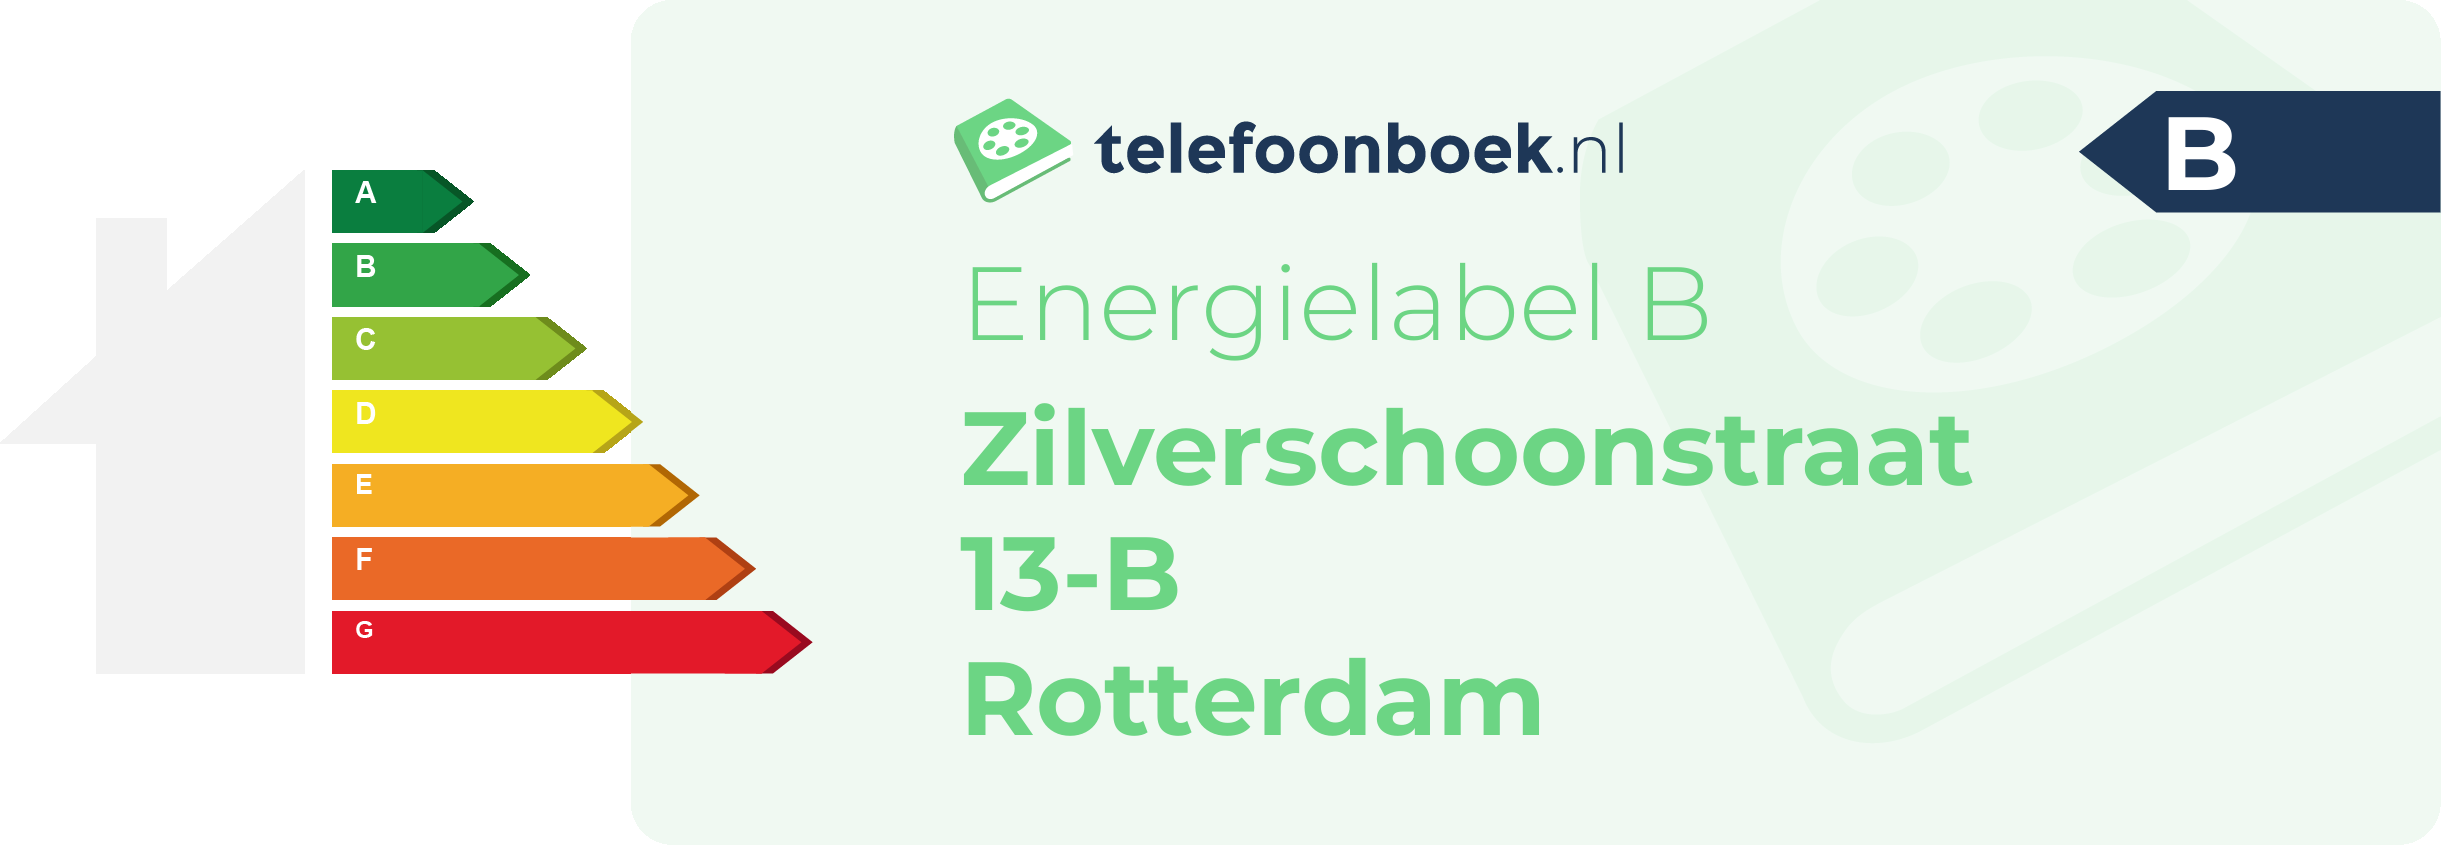 Energielabel Zilverschoonstraat 13-B Rotterdam